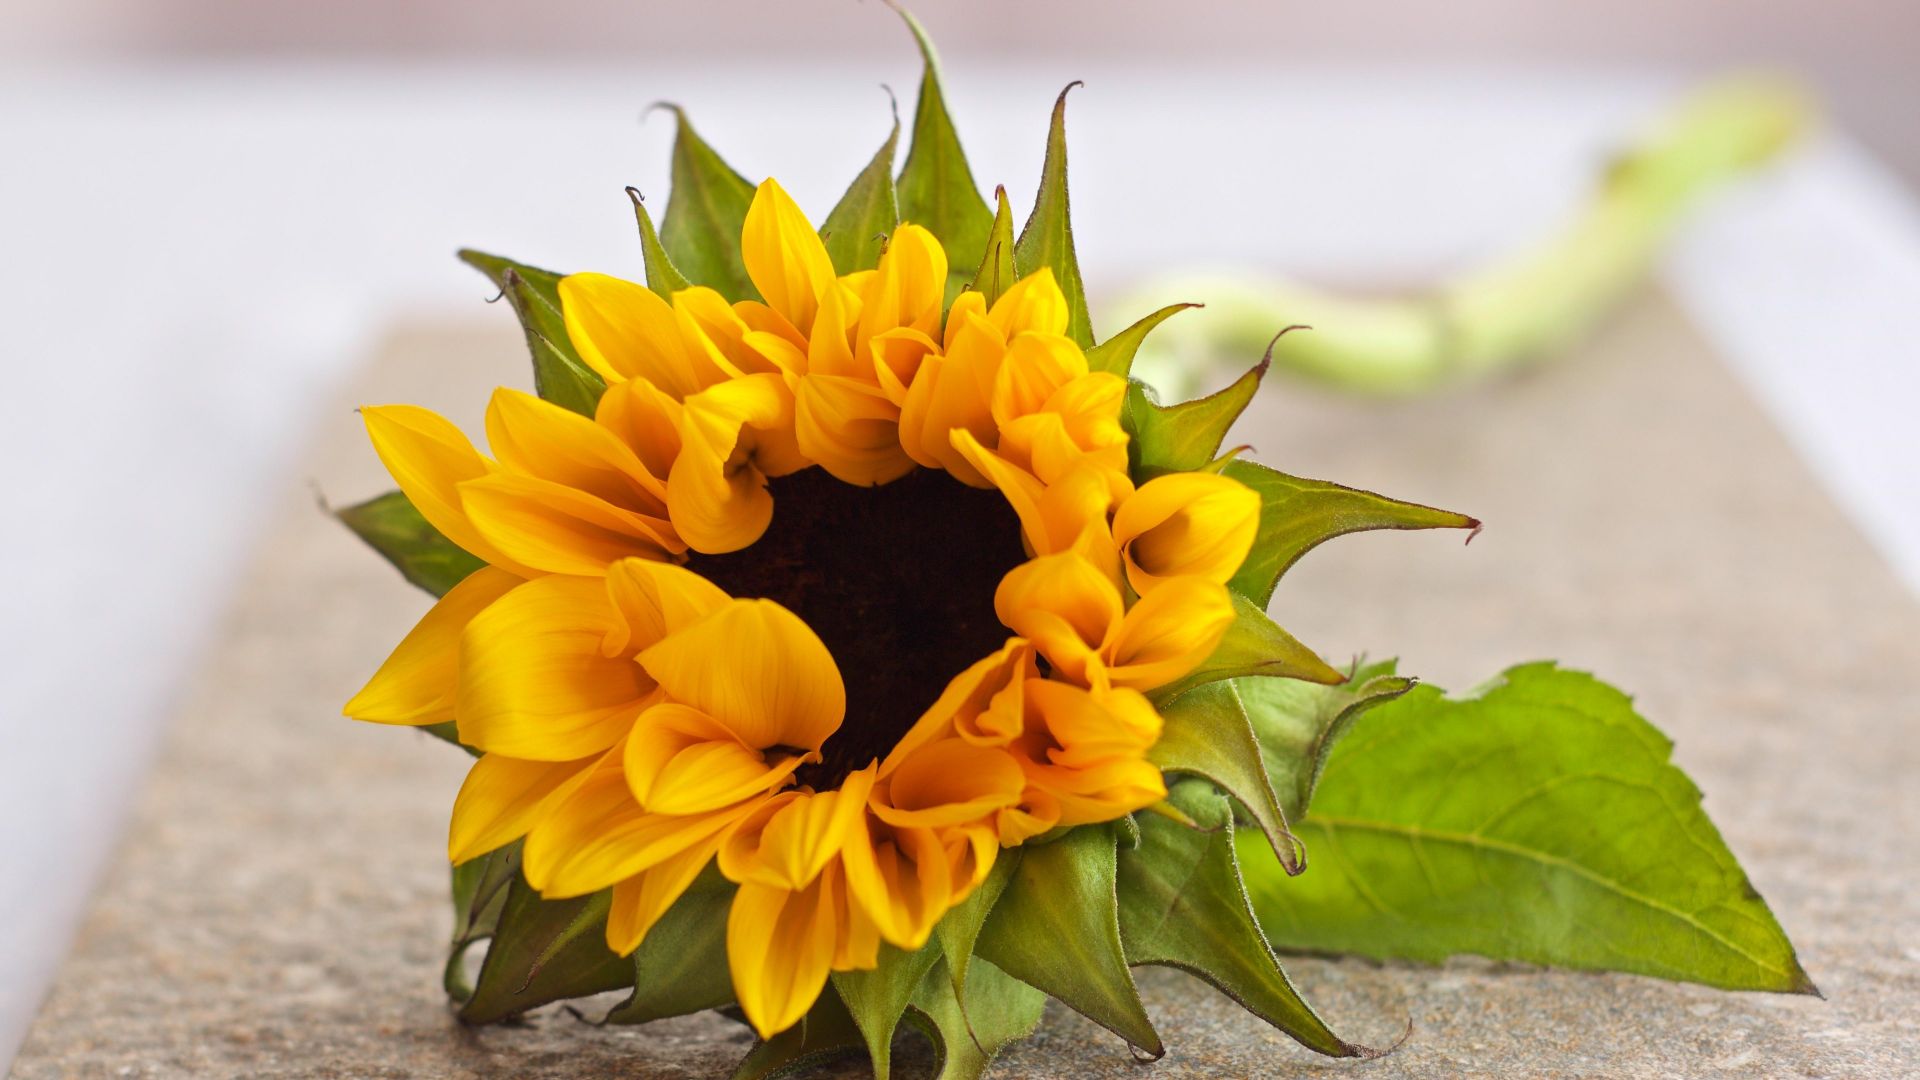 Wallpaper Beautiful Sunflower 